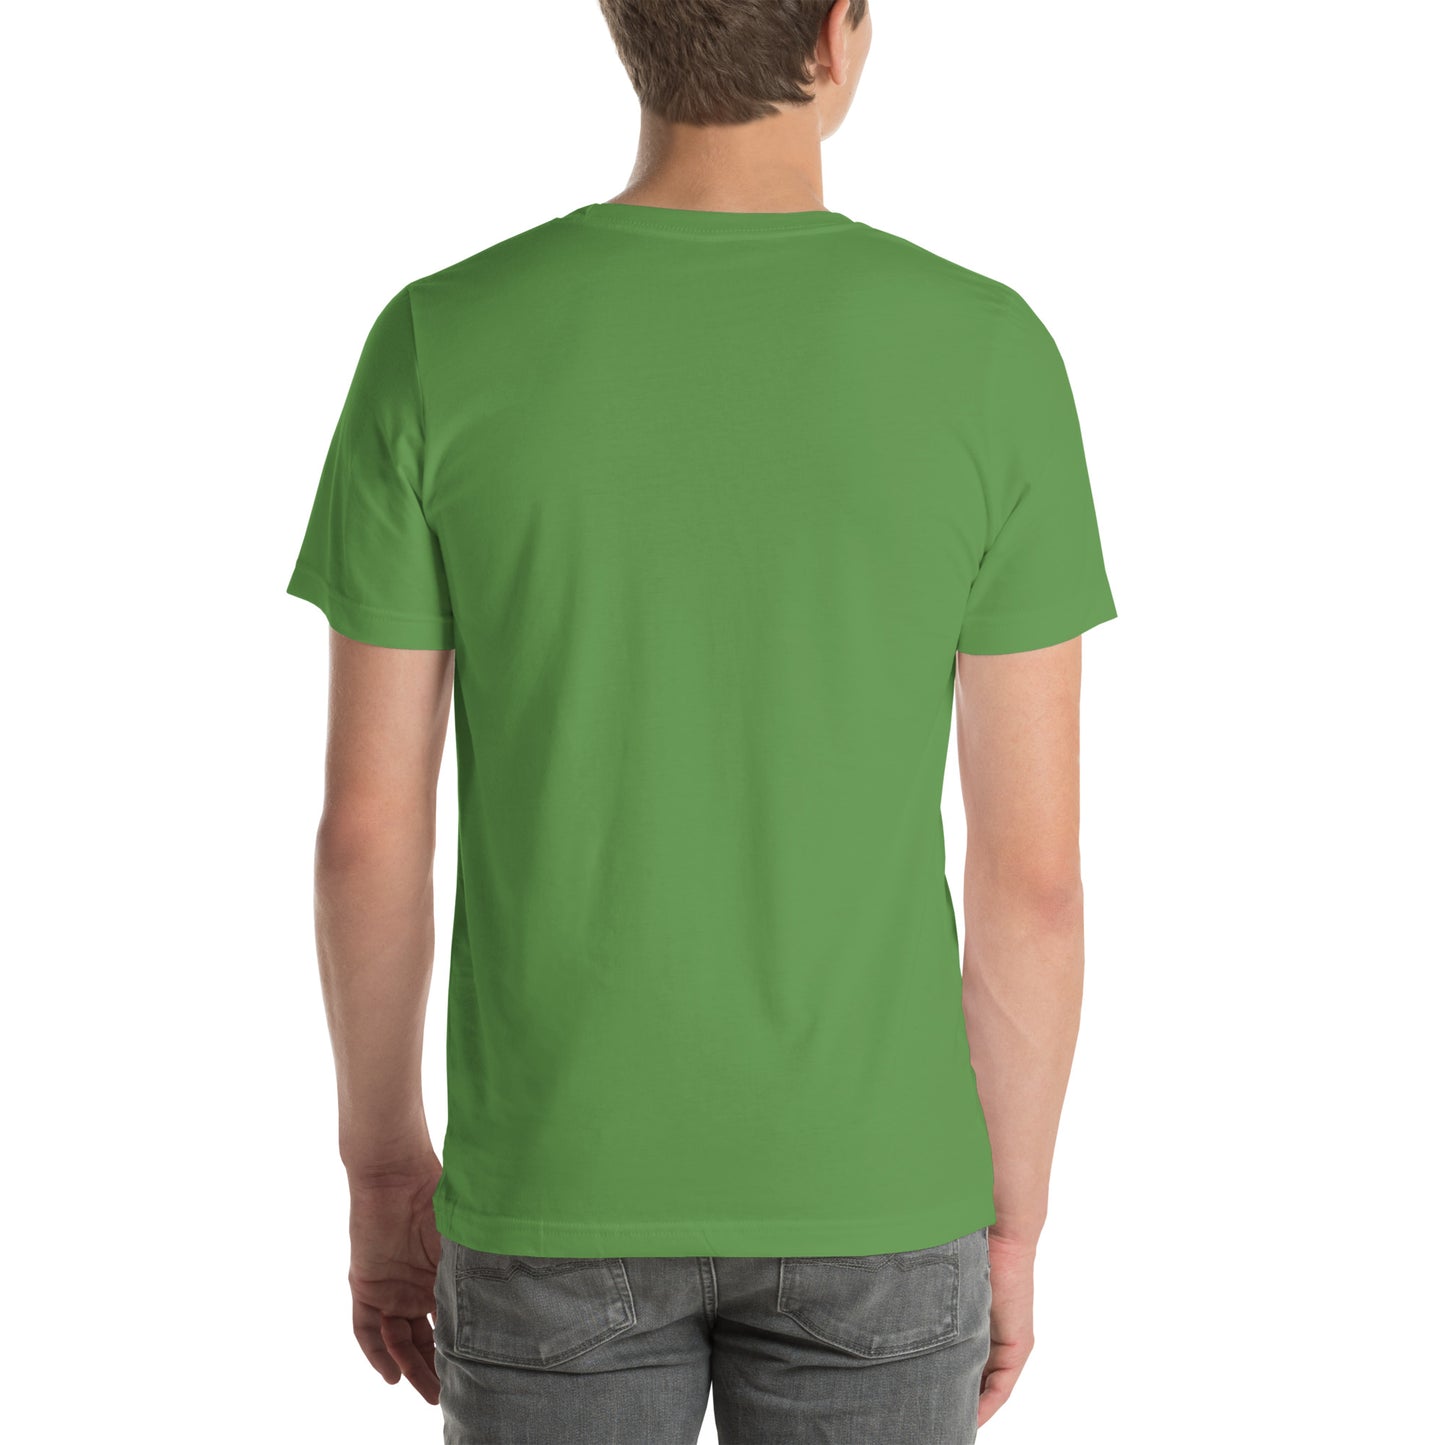 Level 1 Frog | Unisex t-shirt